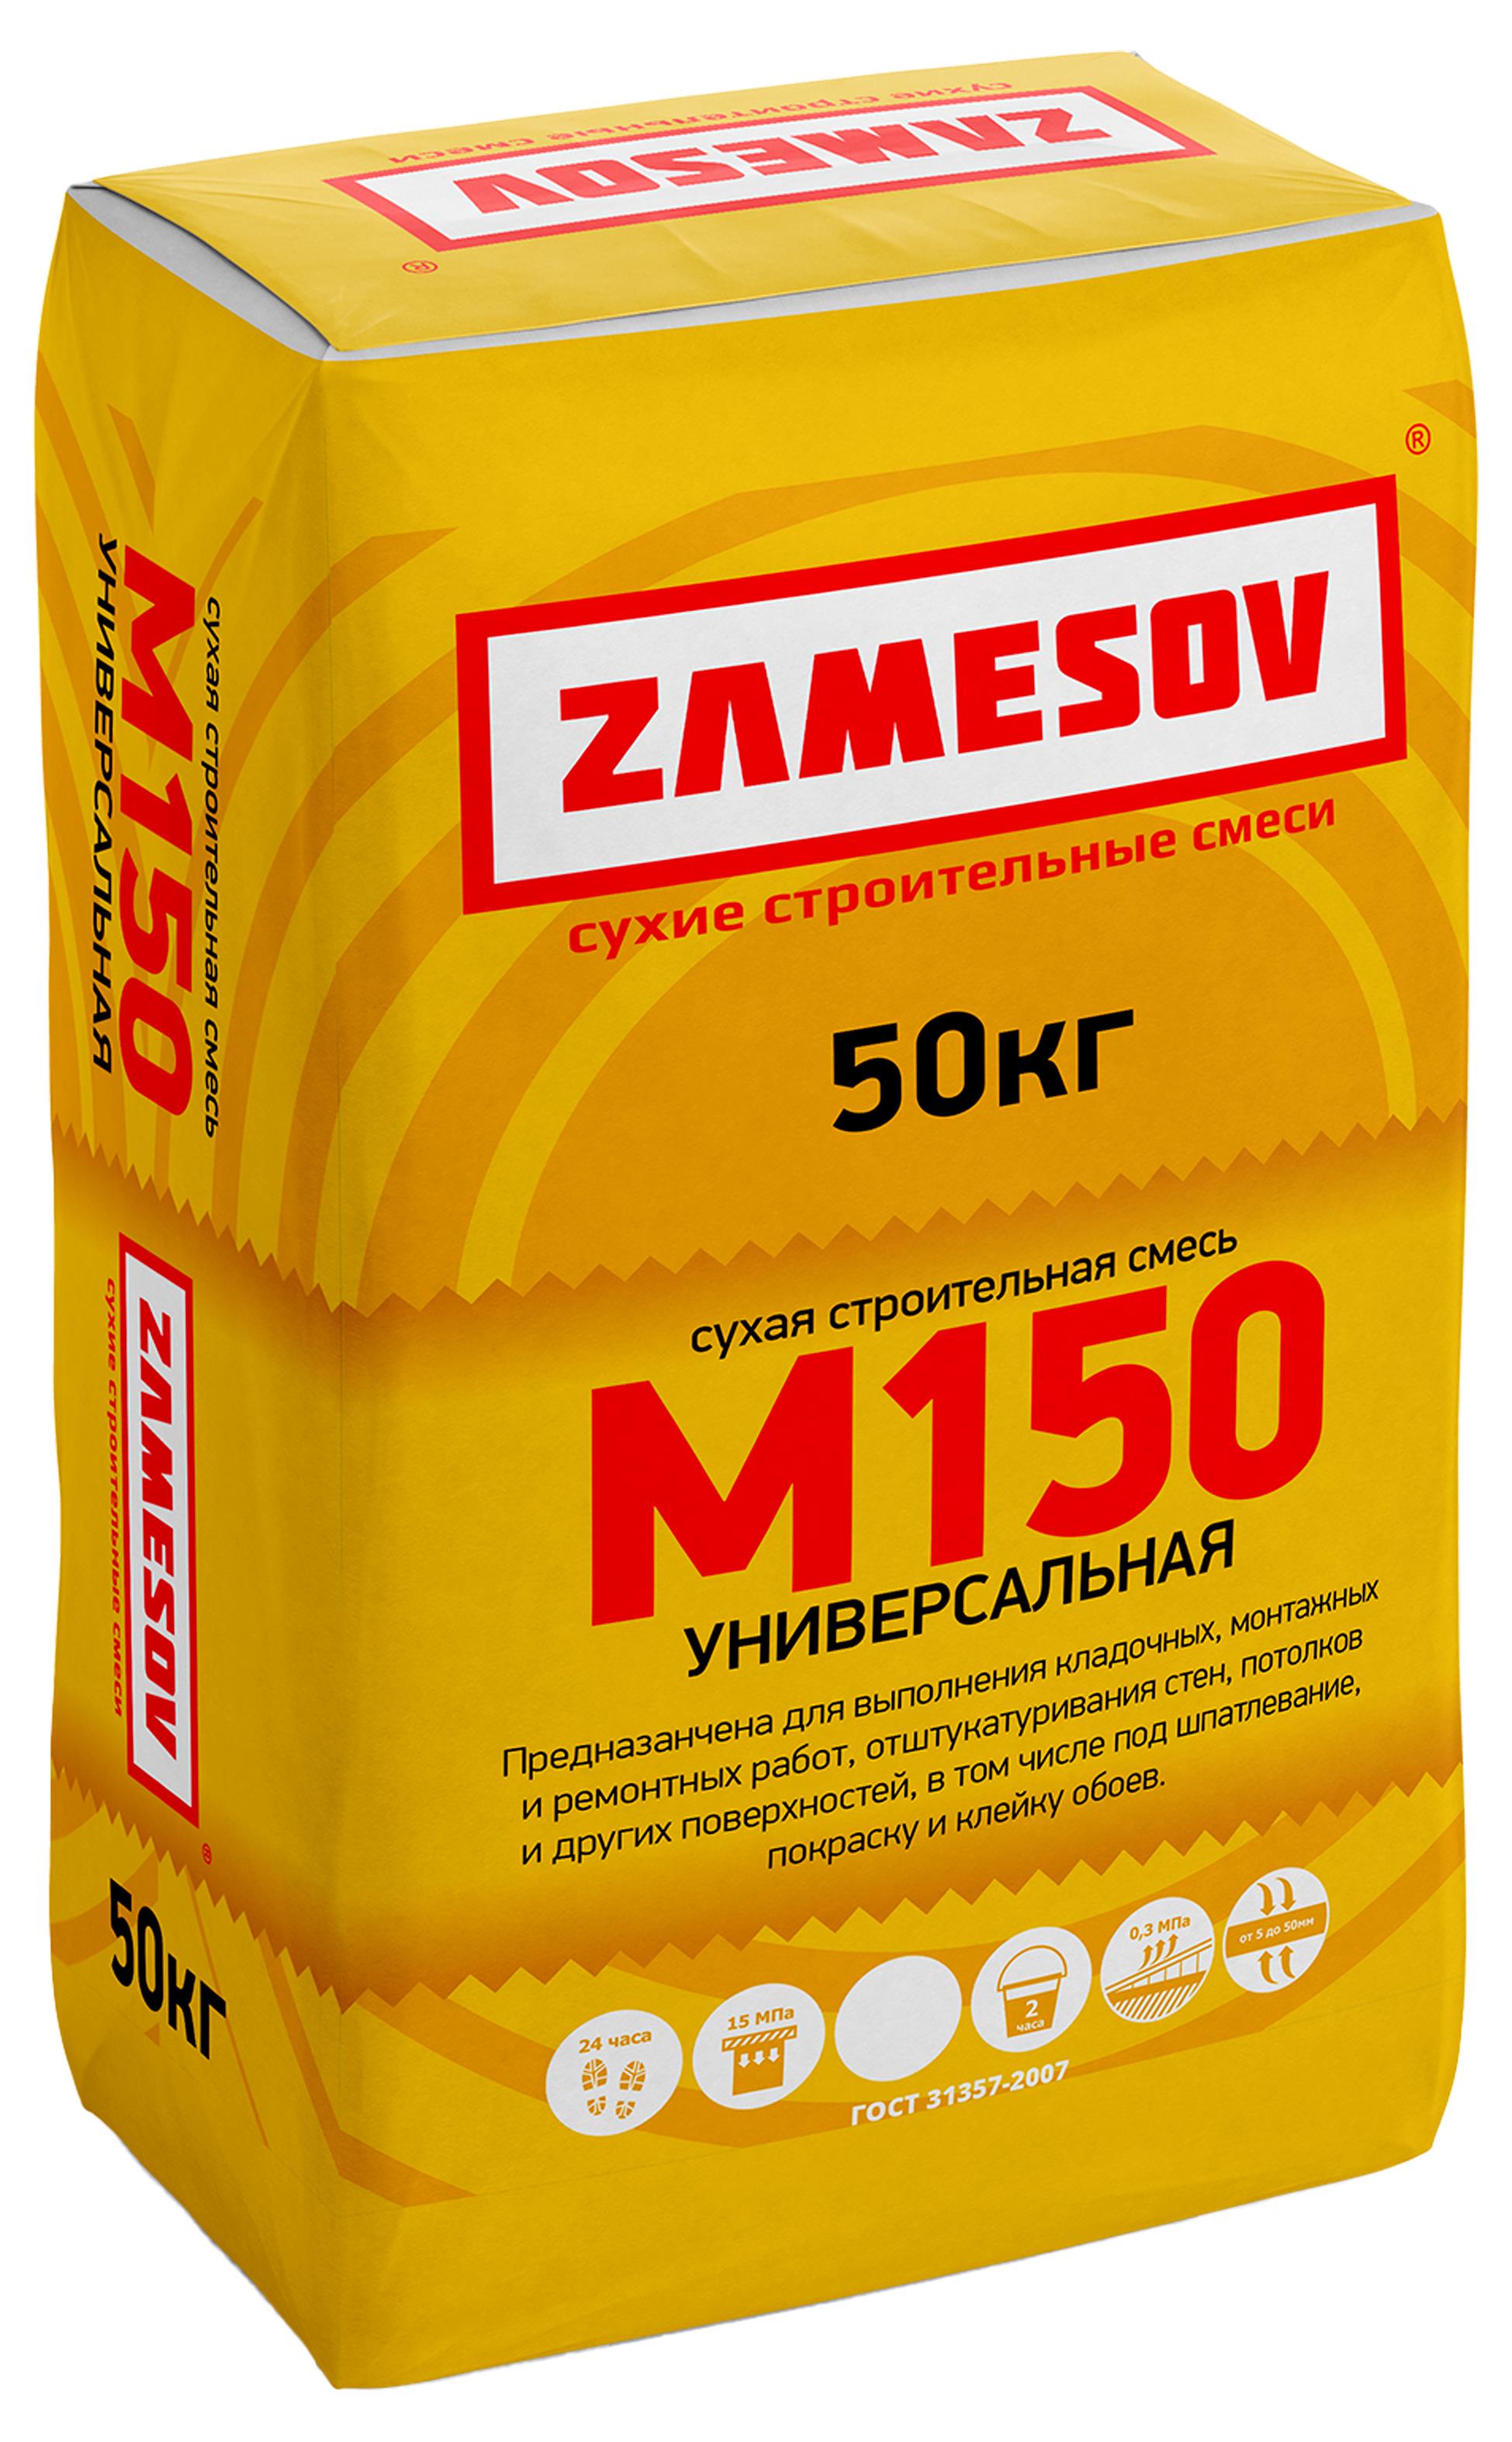 Сухая смесь М150 универсальная (50кг) ZAMESOV